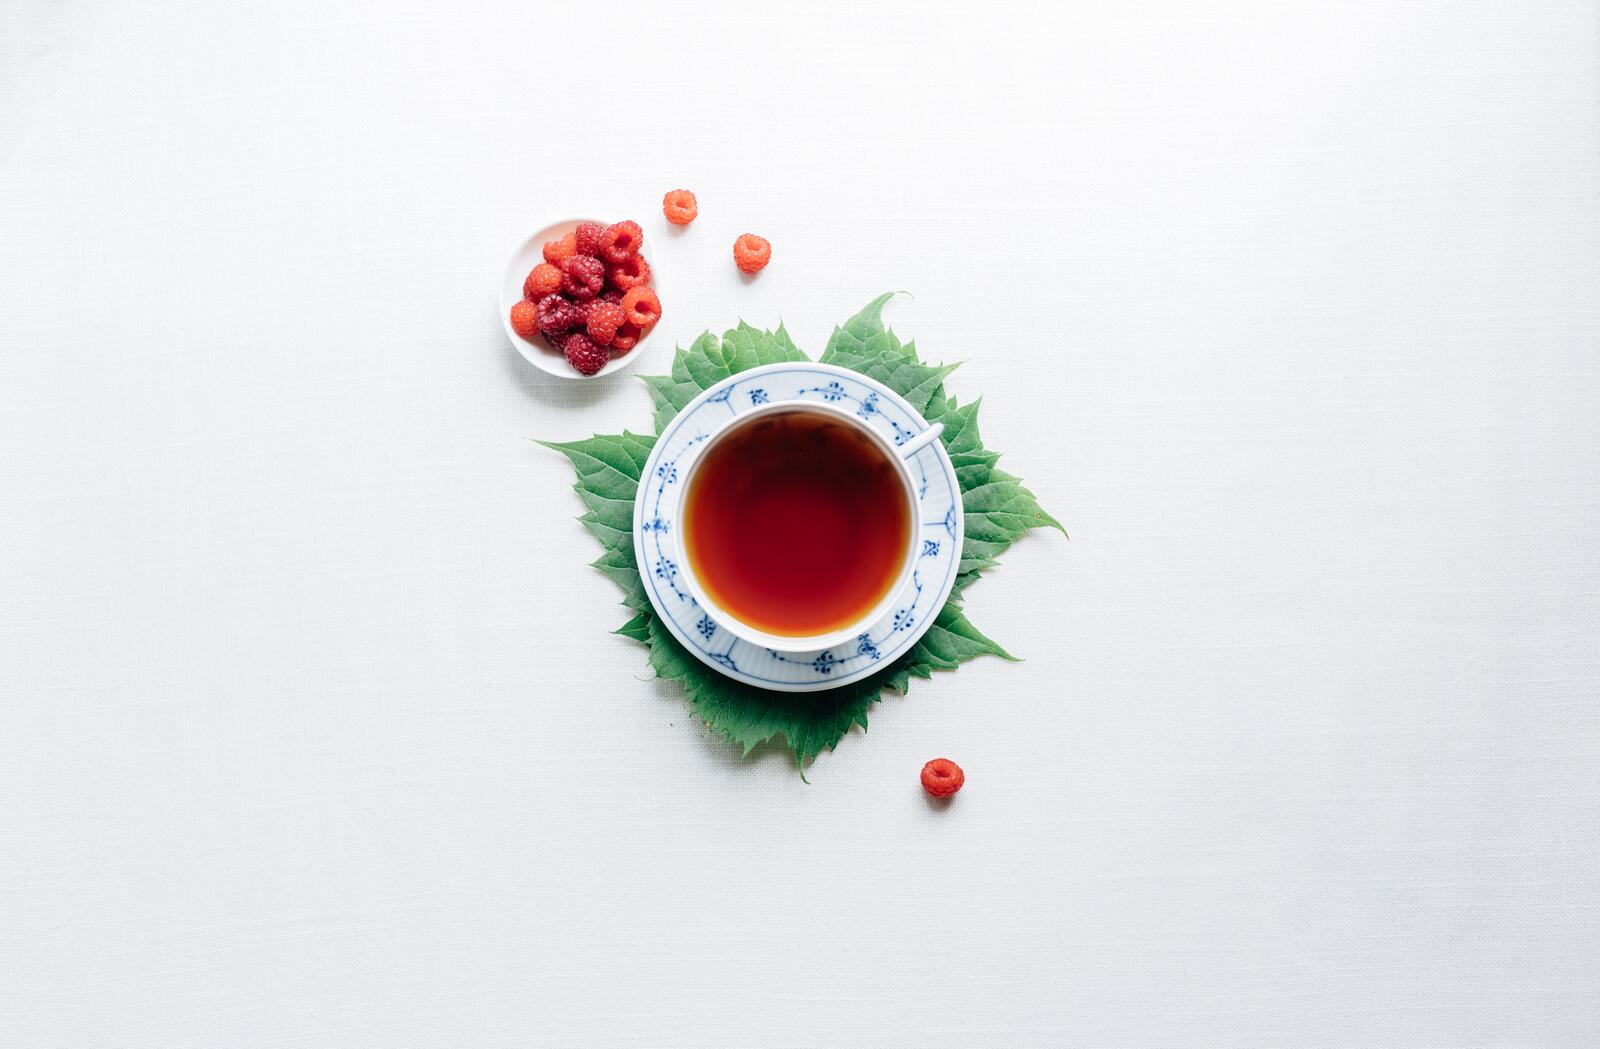 Бесплатное фото Кружка чая с малиной на светло-сером фоне